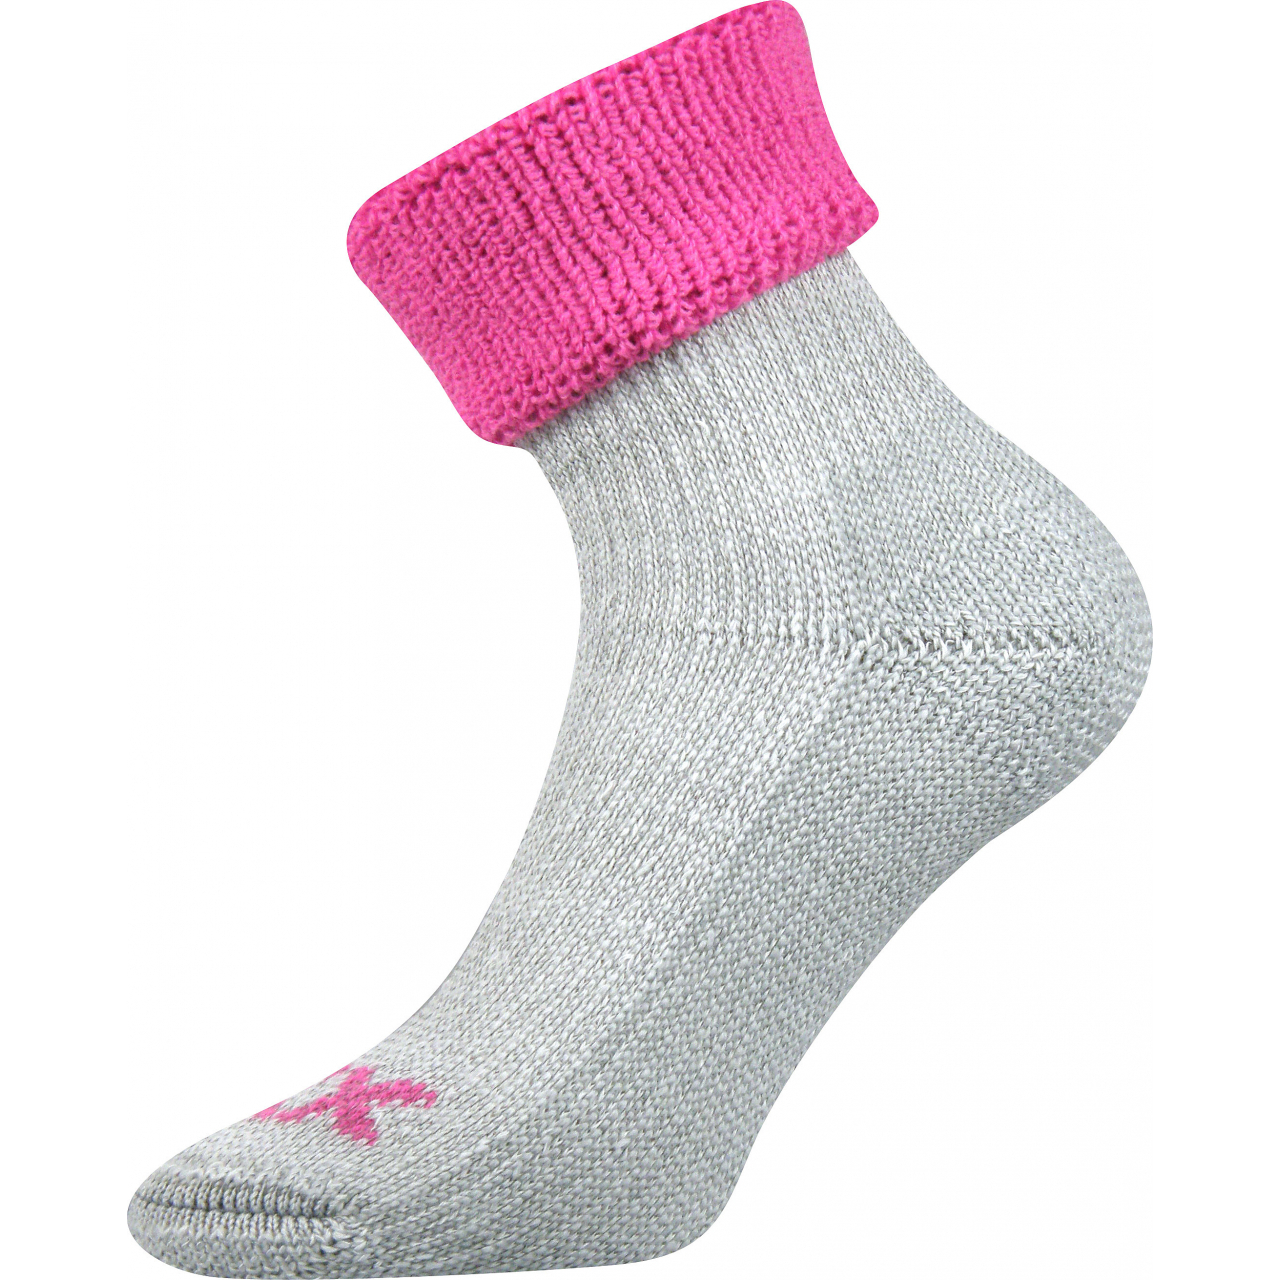 Ponožky dámské termo Voxx Quanta - šedé-růžové, 35-38